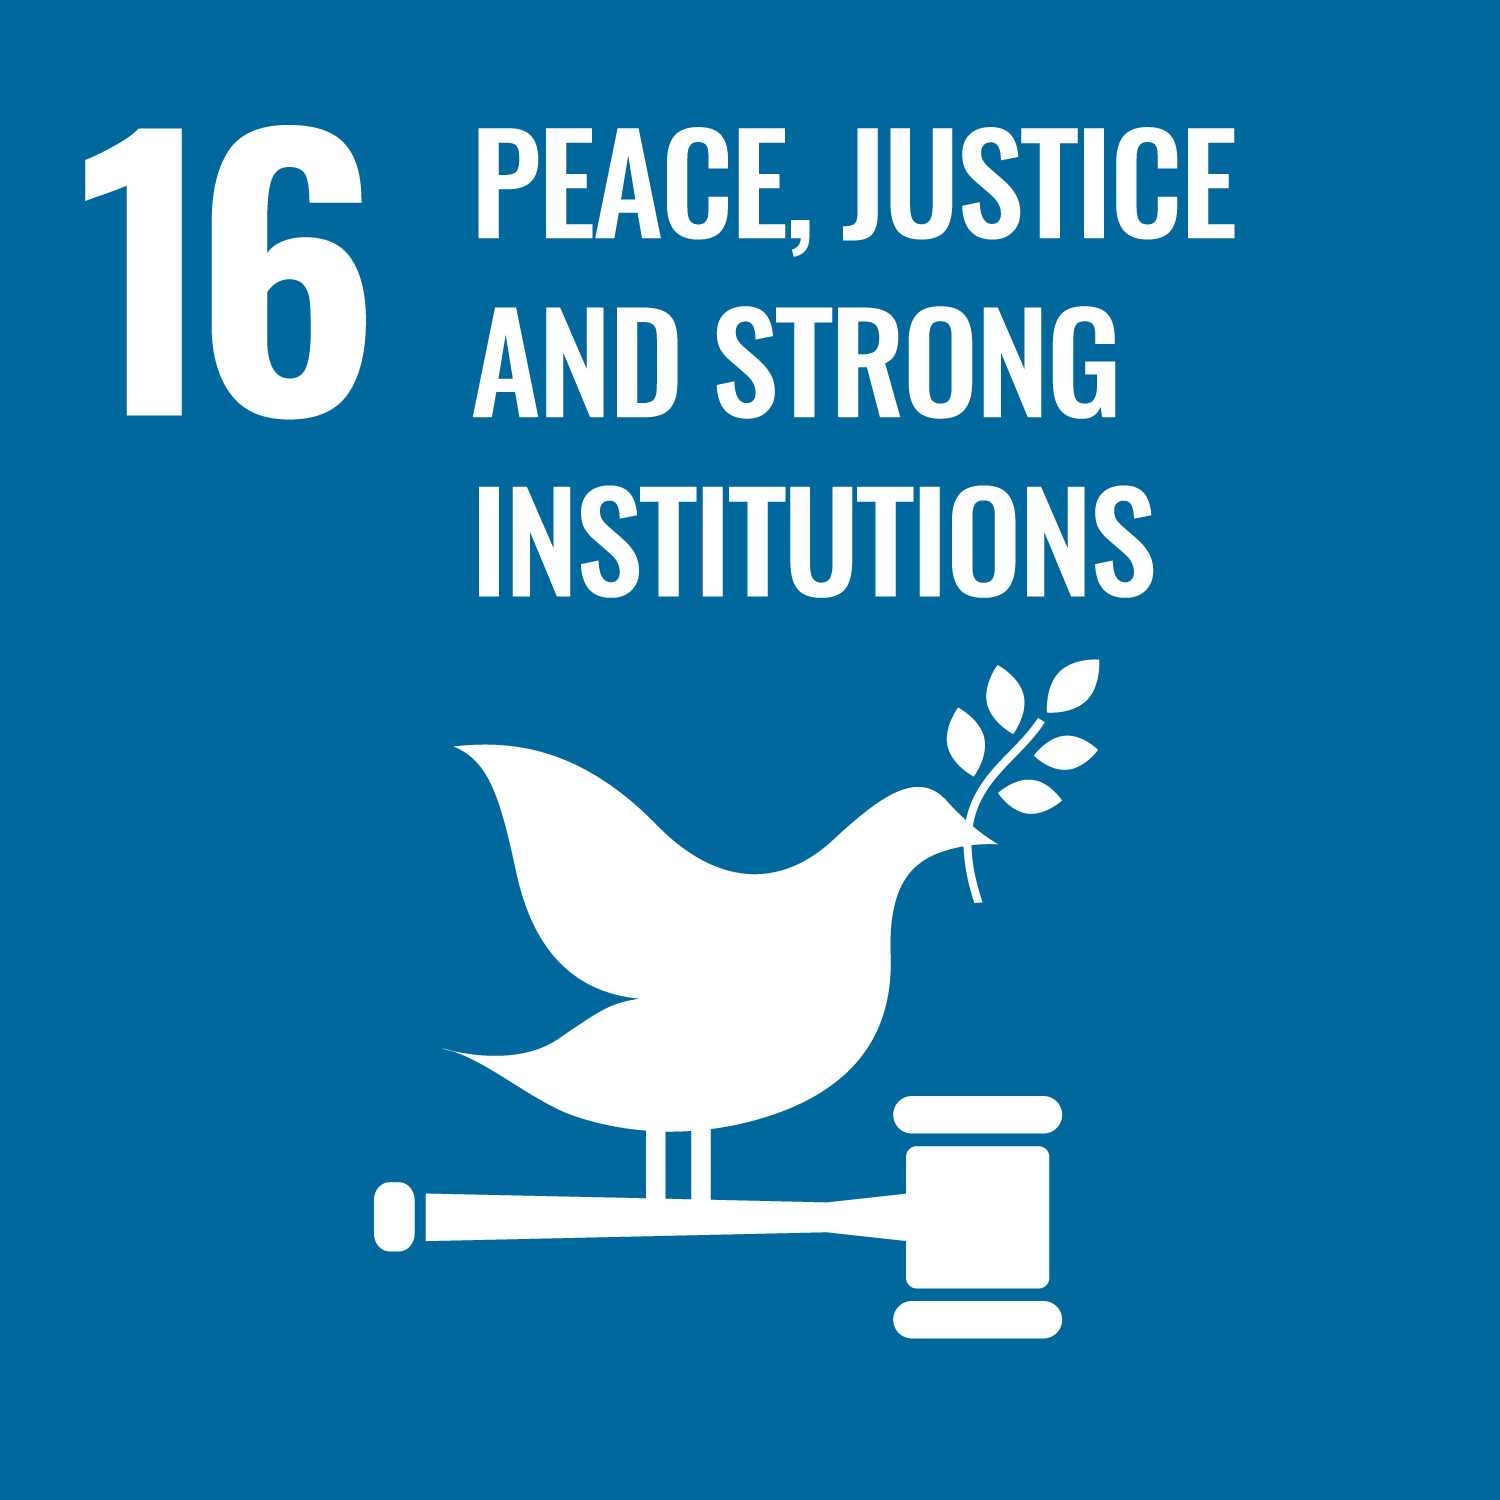 SDGs goals No.16